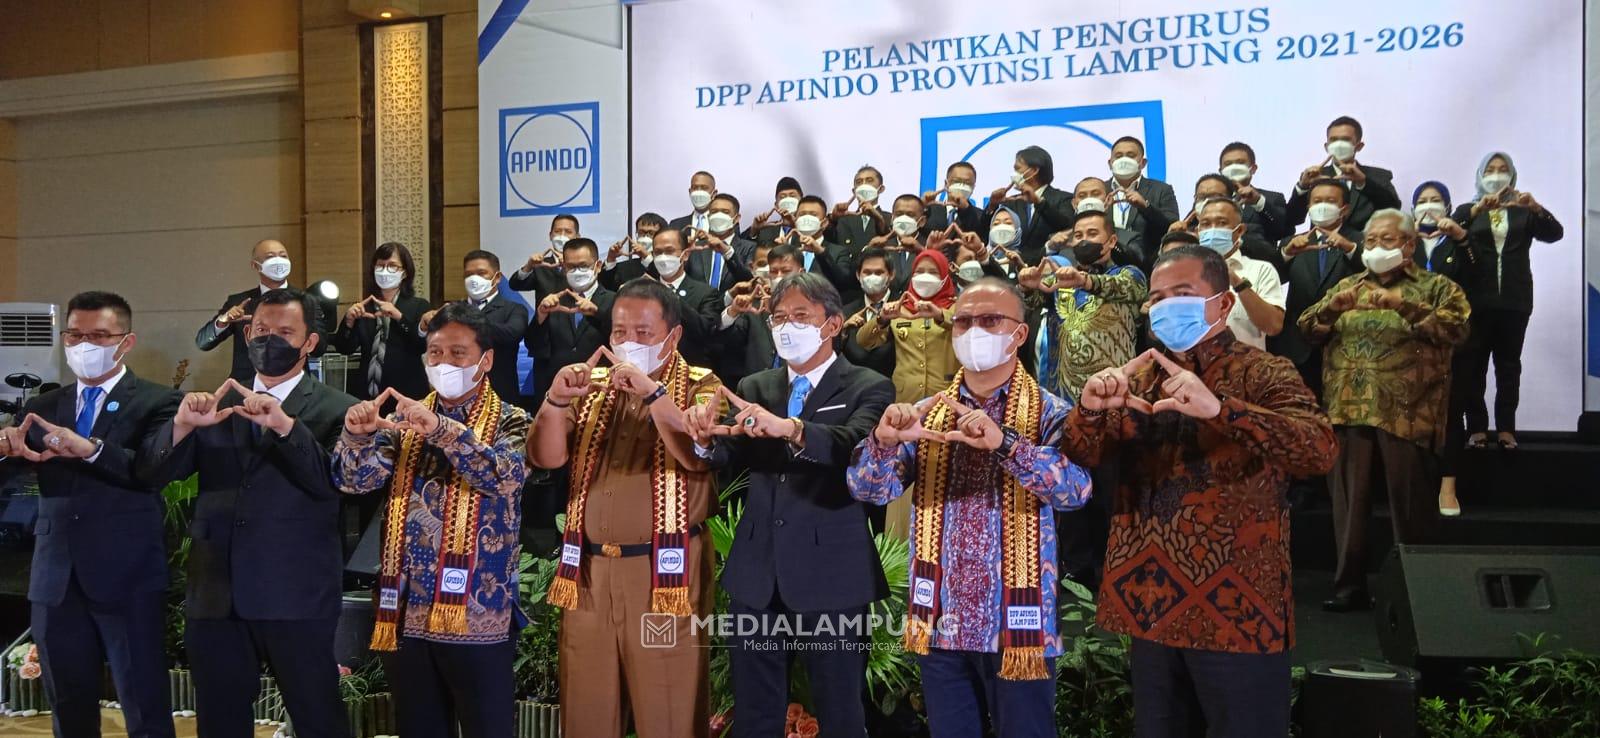 Pengurus DPP APINDO Lampung Resmi Dilantik